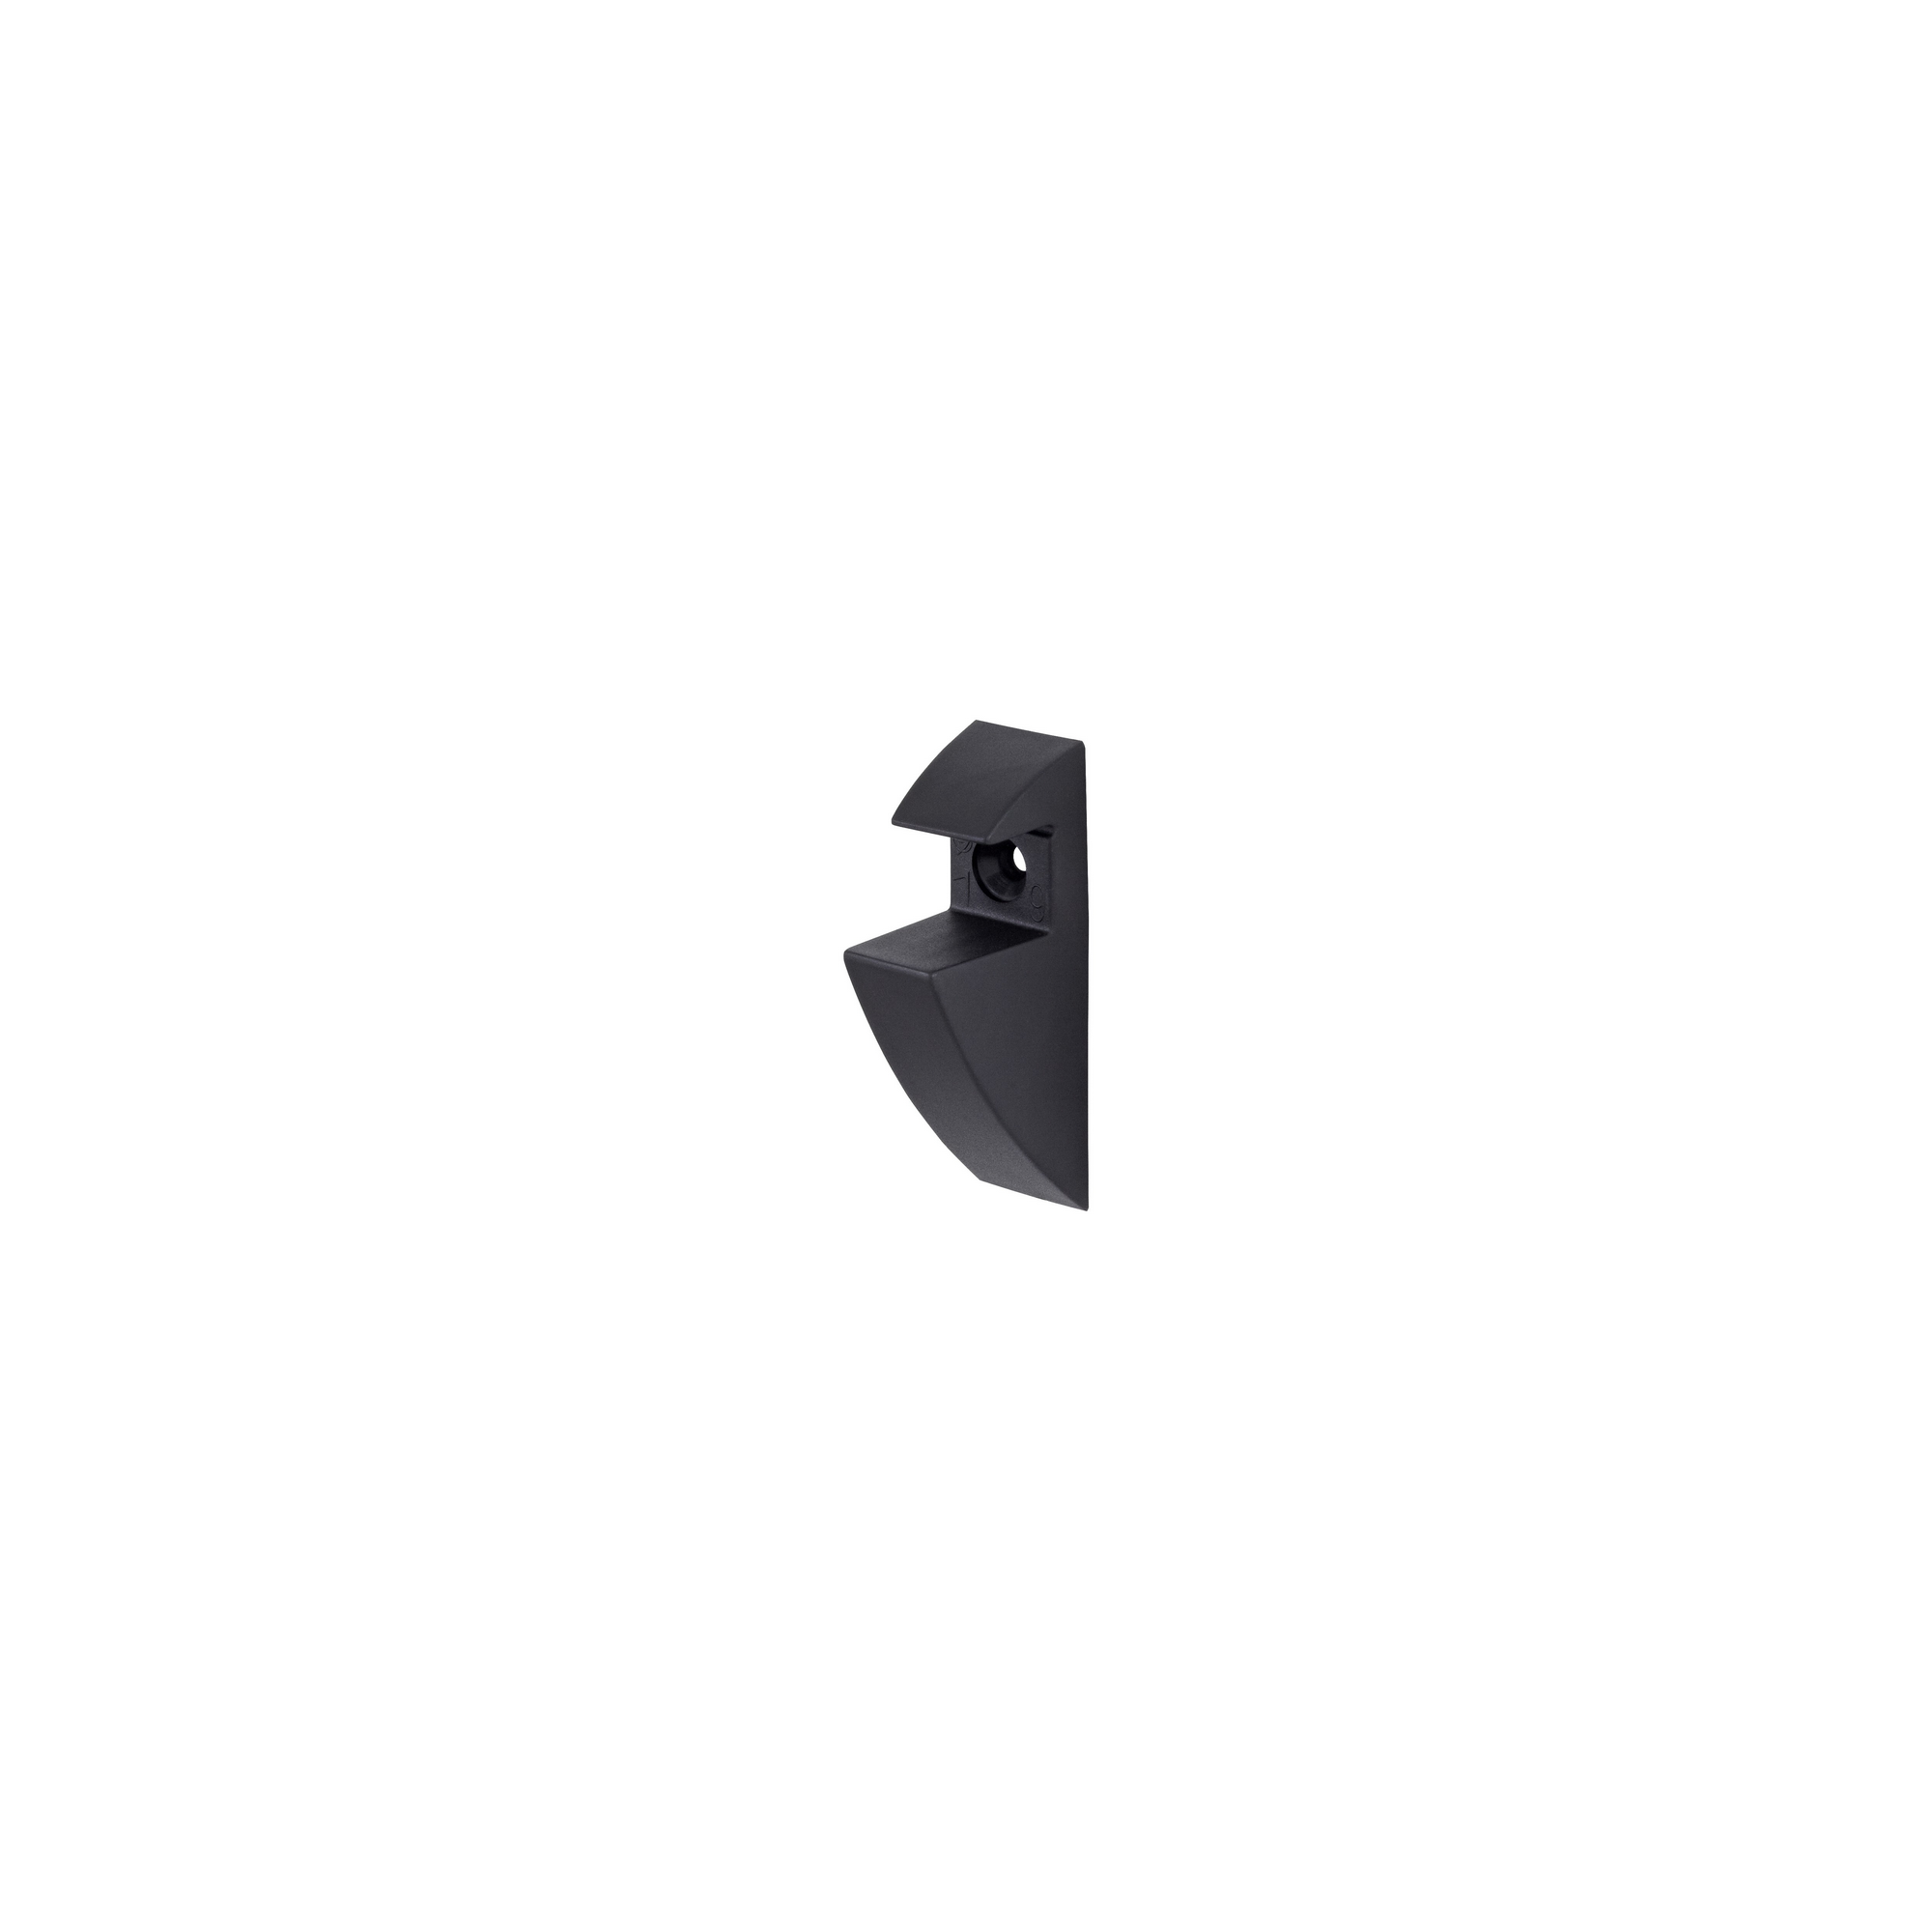 Regalträger-Clip schwarz 19 mm + product picture